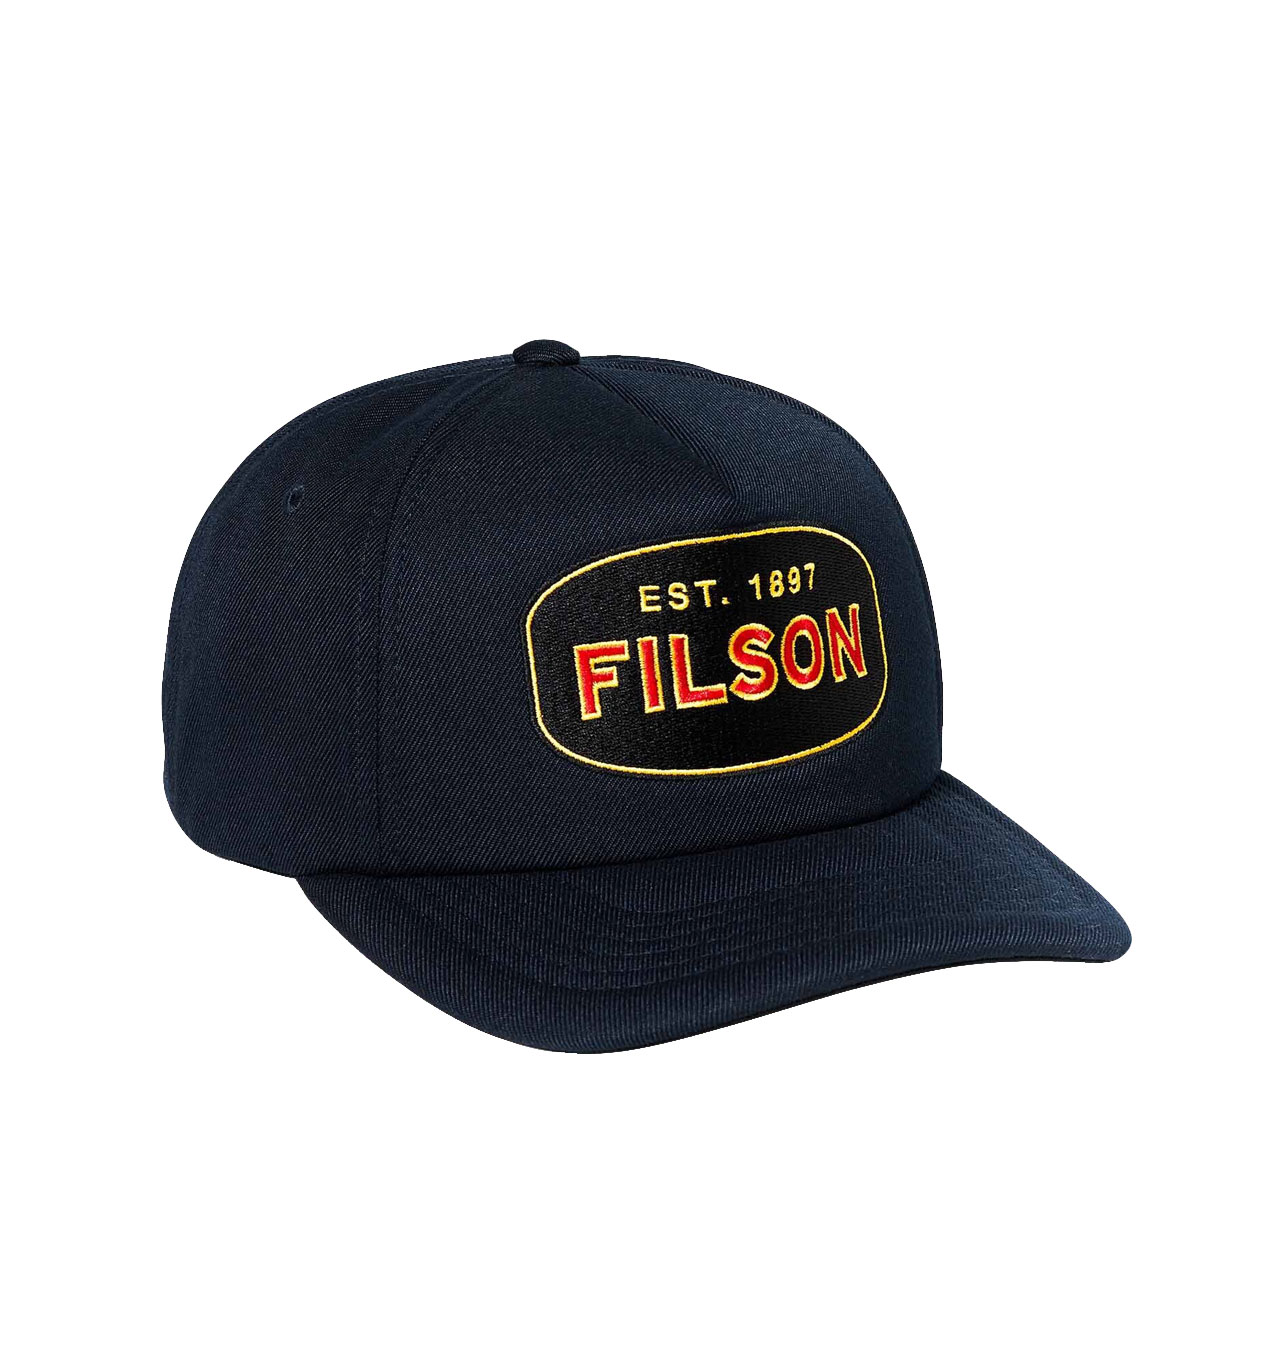 Filson - Harvester Cap - Dark Navy/Defender